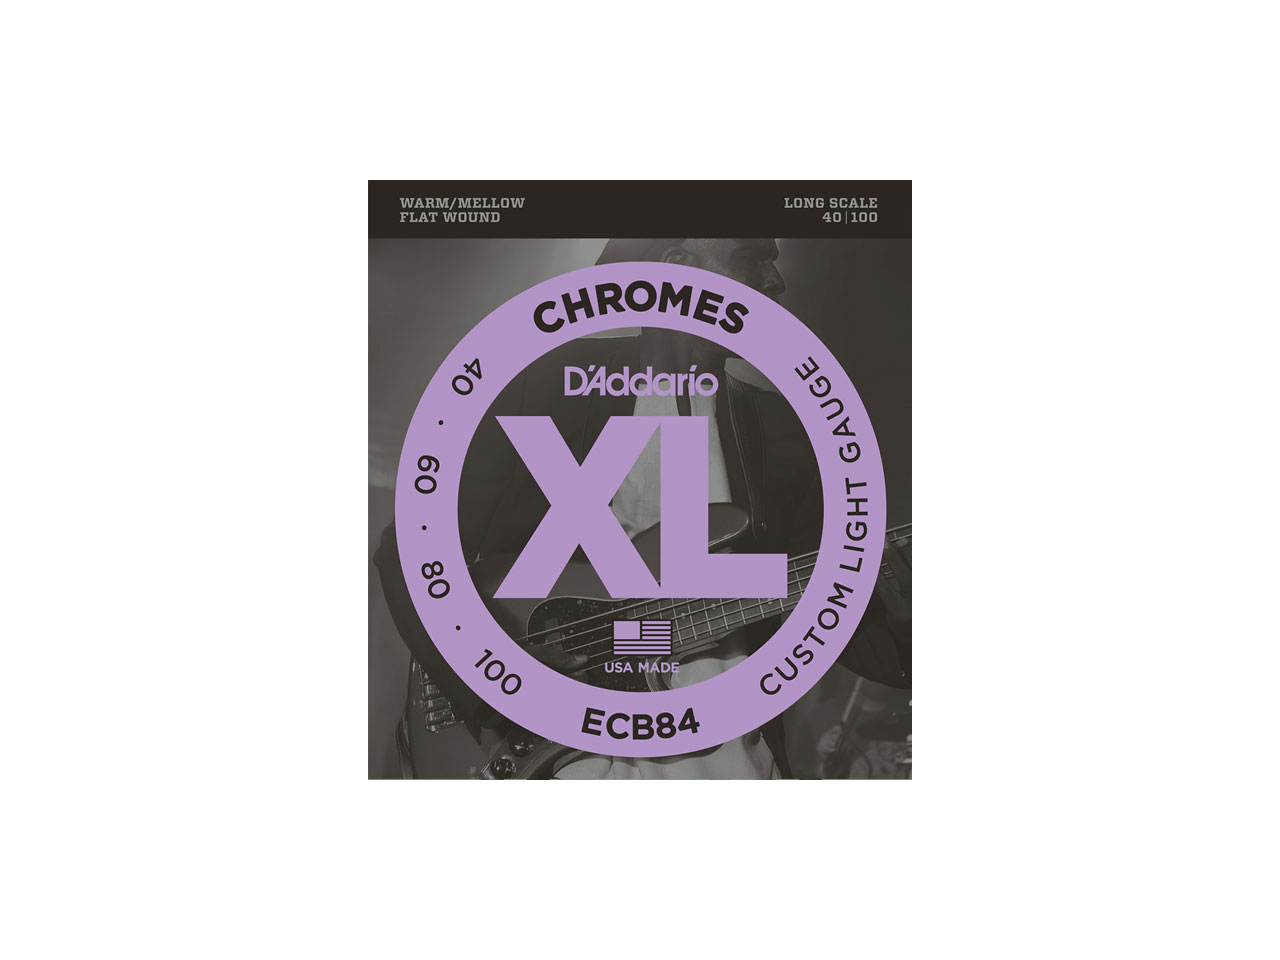 D'Addario(ダダリオ) XL Chromes Flat Wound , Long Scale , Custom Light / ECB84 (エレキベース弦)